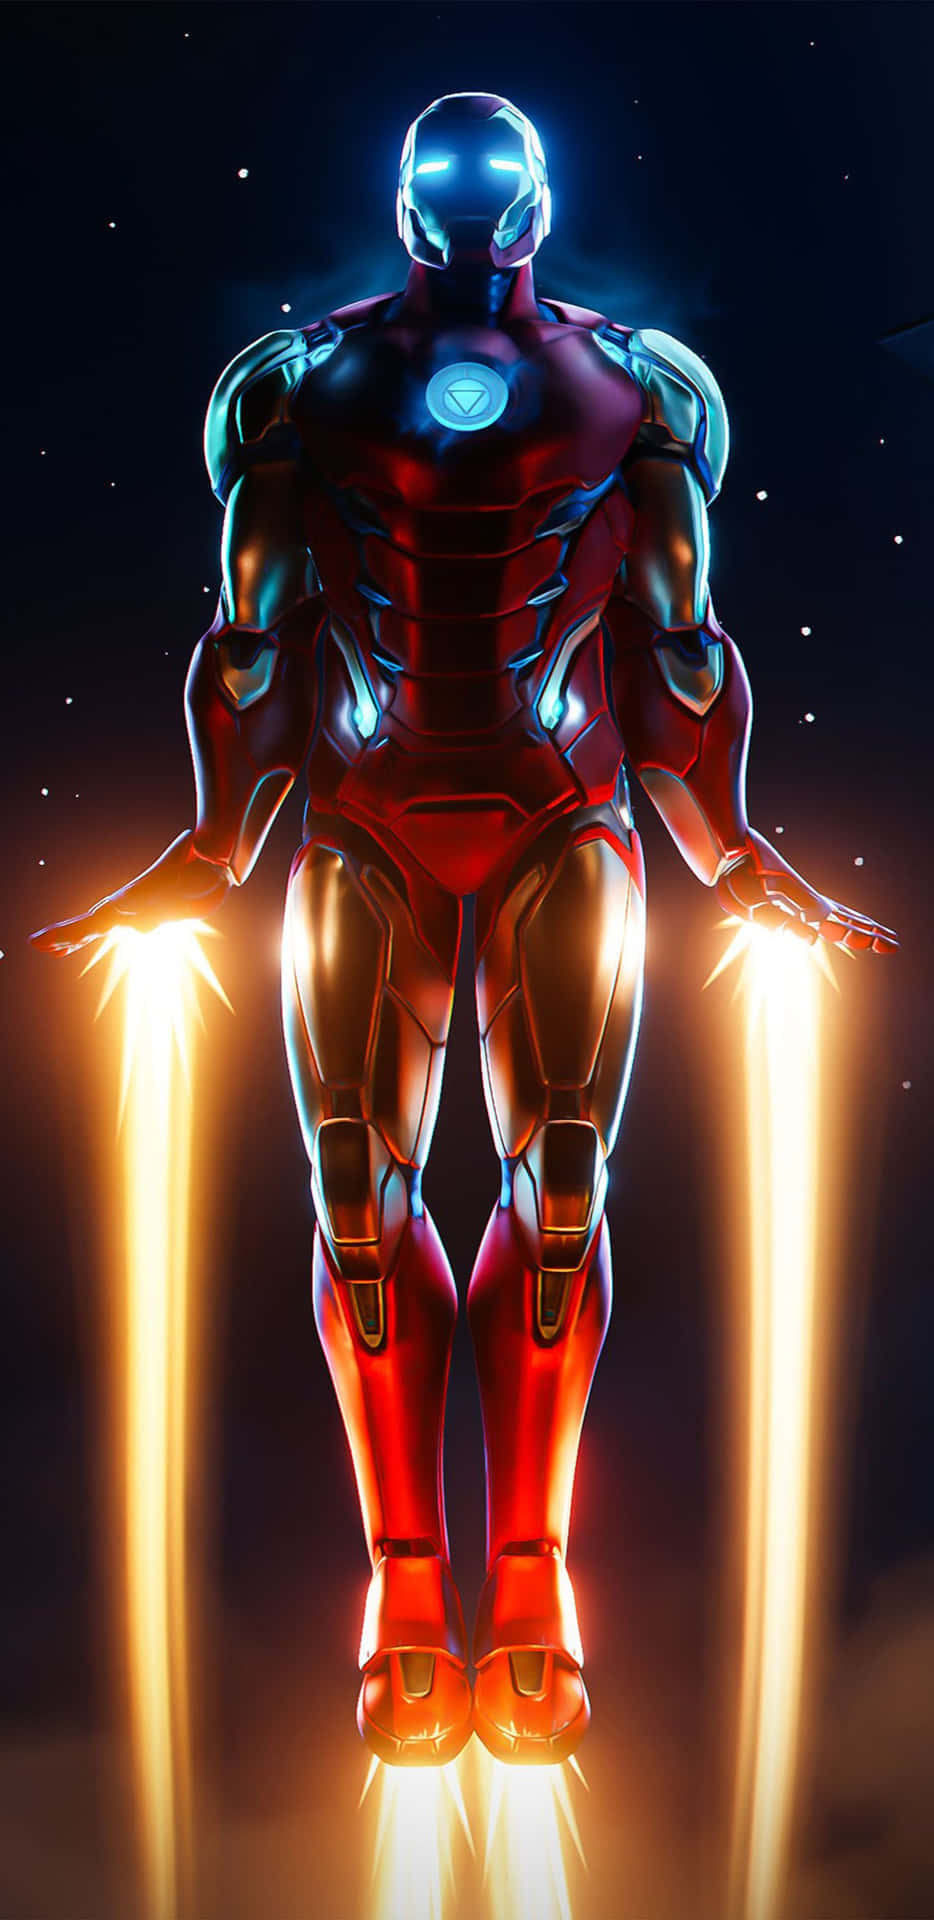 Pixel3xl Iron Man Jet Boots Bakgrundsbild.